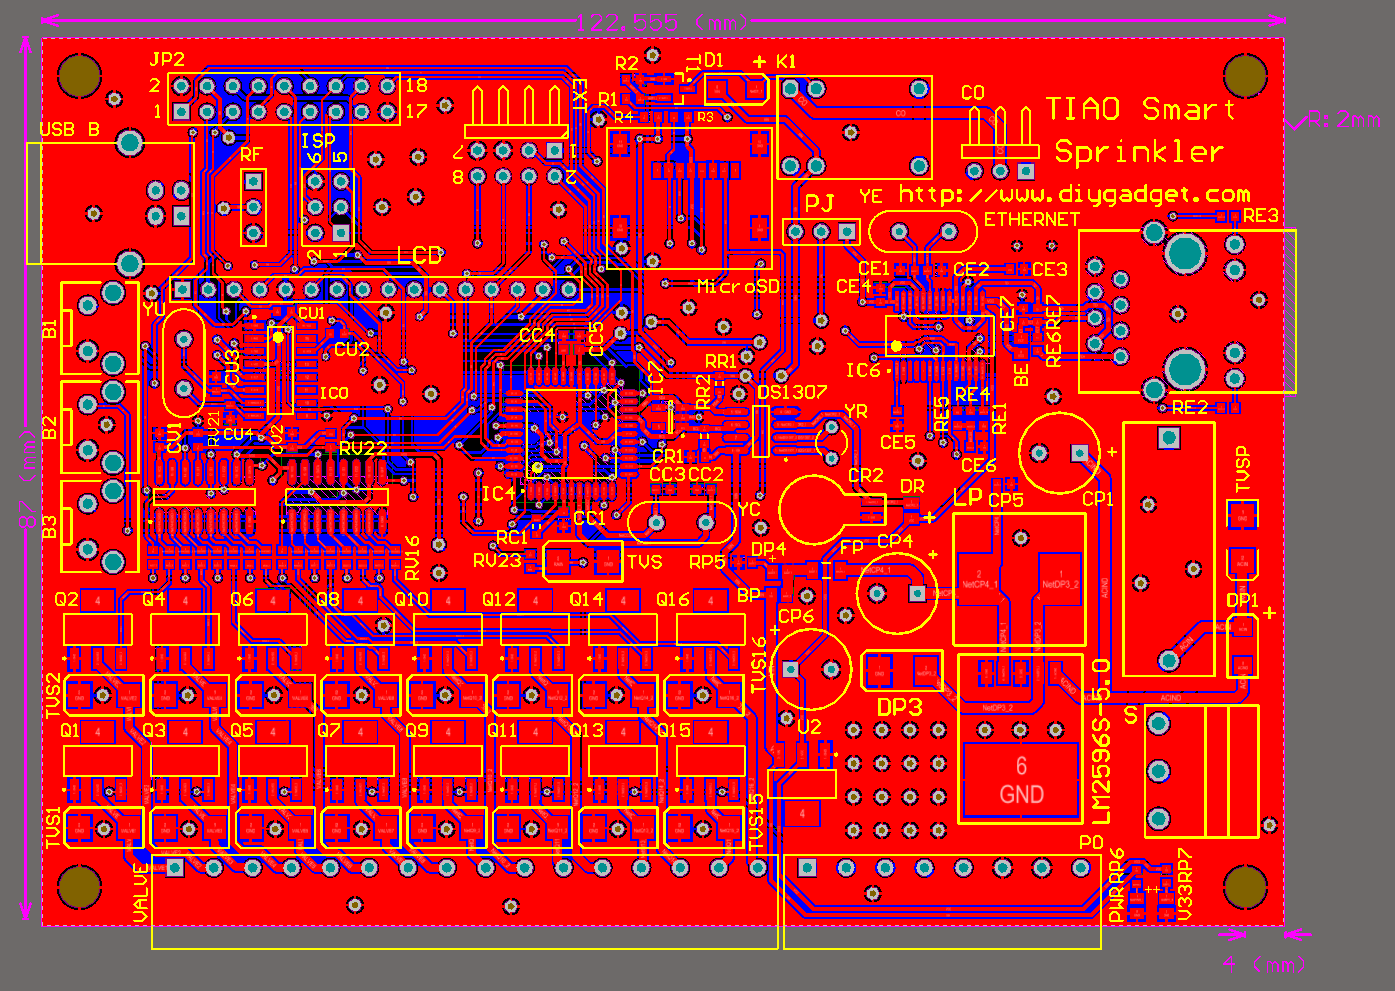 Tiao-smart-sprinkler-controller-board-2d.png